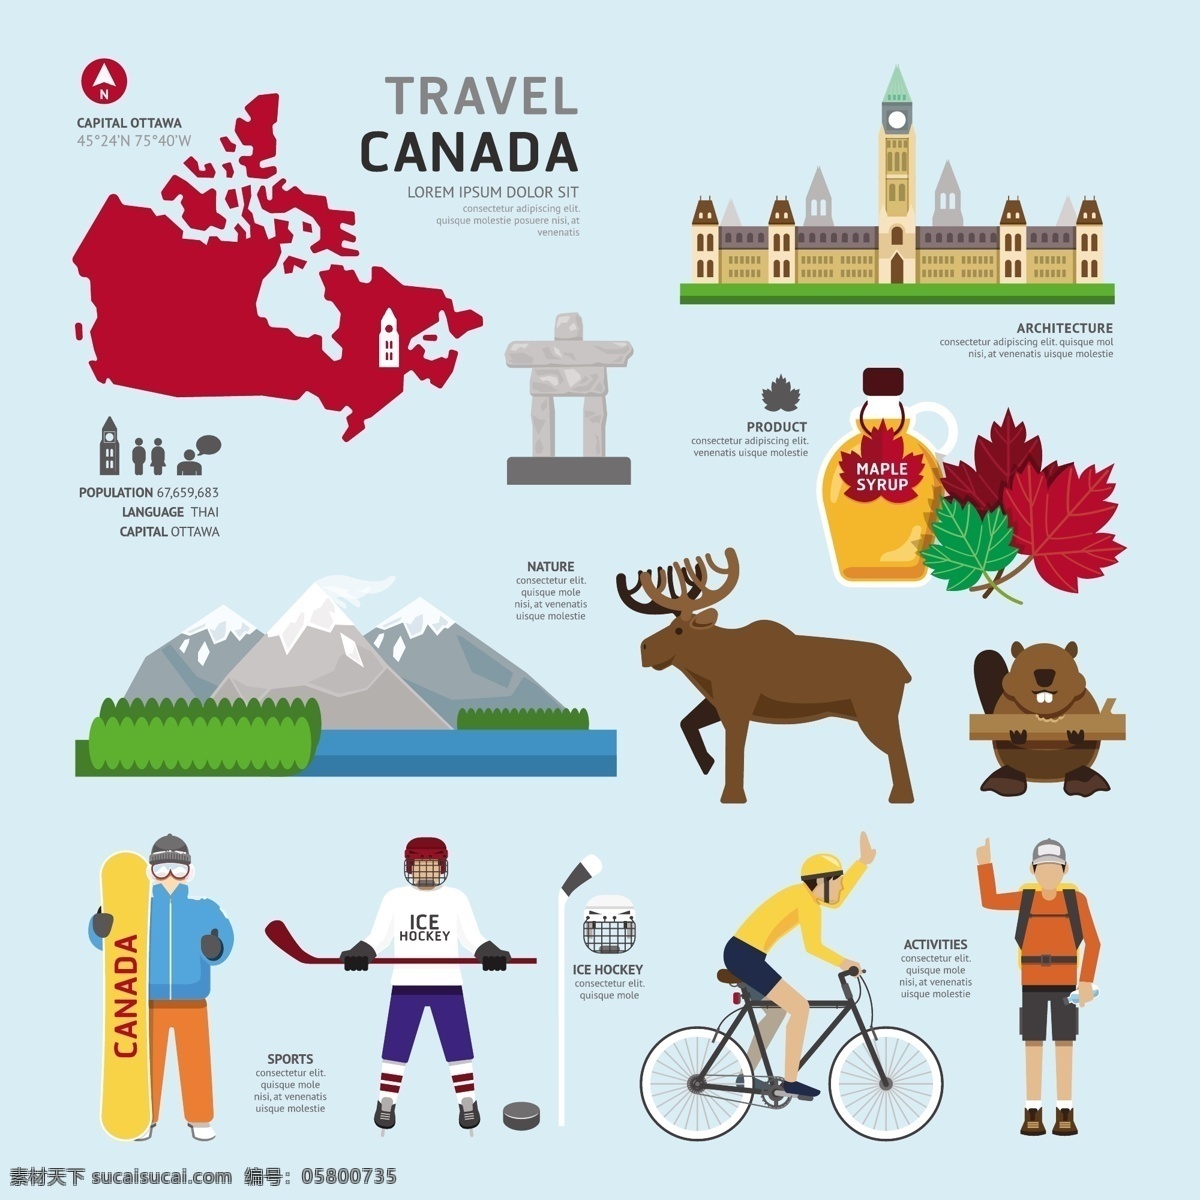 eps格式 动物 枫叶 滑板 加拿大地图 旅行 旅游景点 旅游图标 麋鹿 驯鹿 加拿大 文化 元素 矢量 加拿大旅游 著名景点 冰球 曲棍球 自行车 矢量图